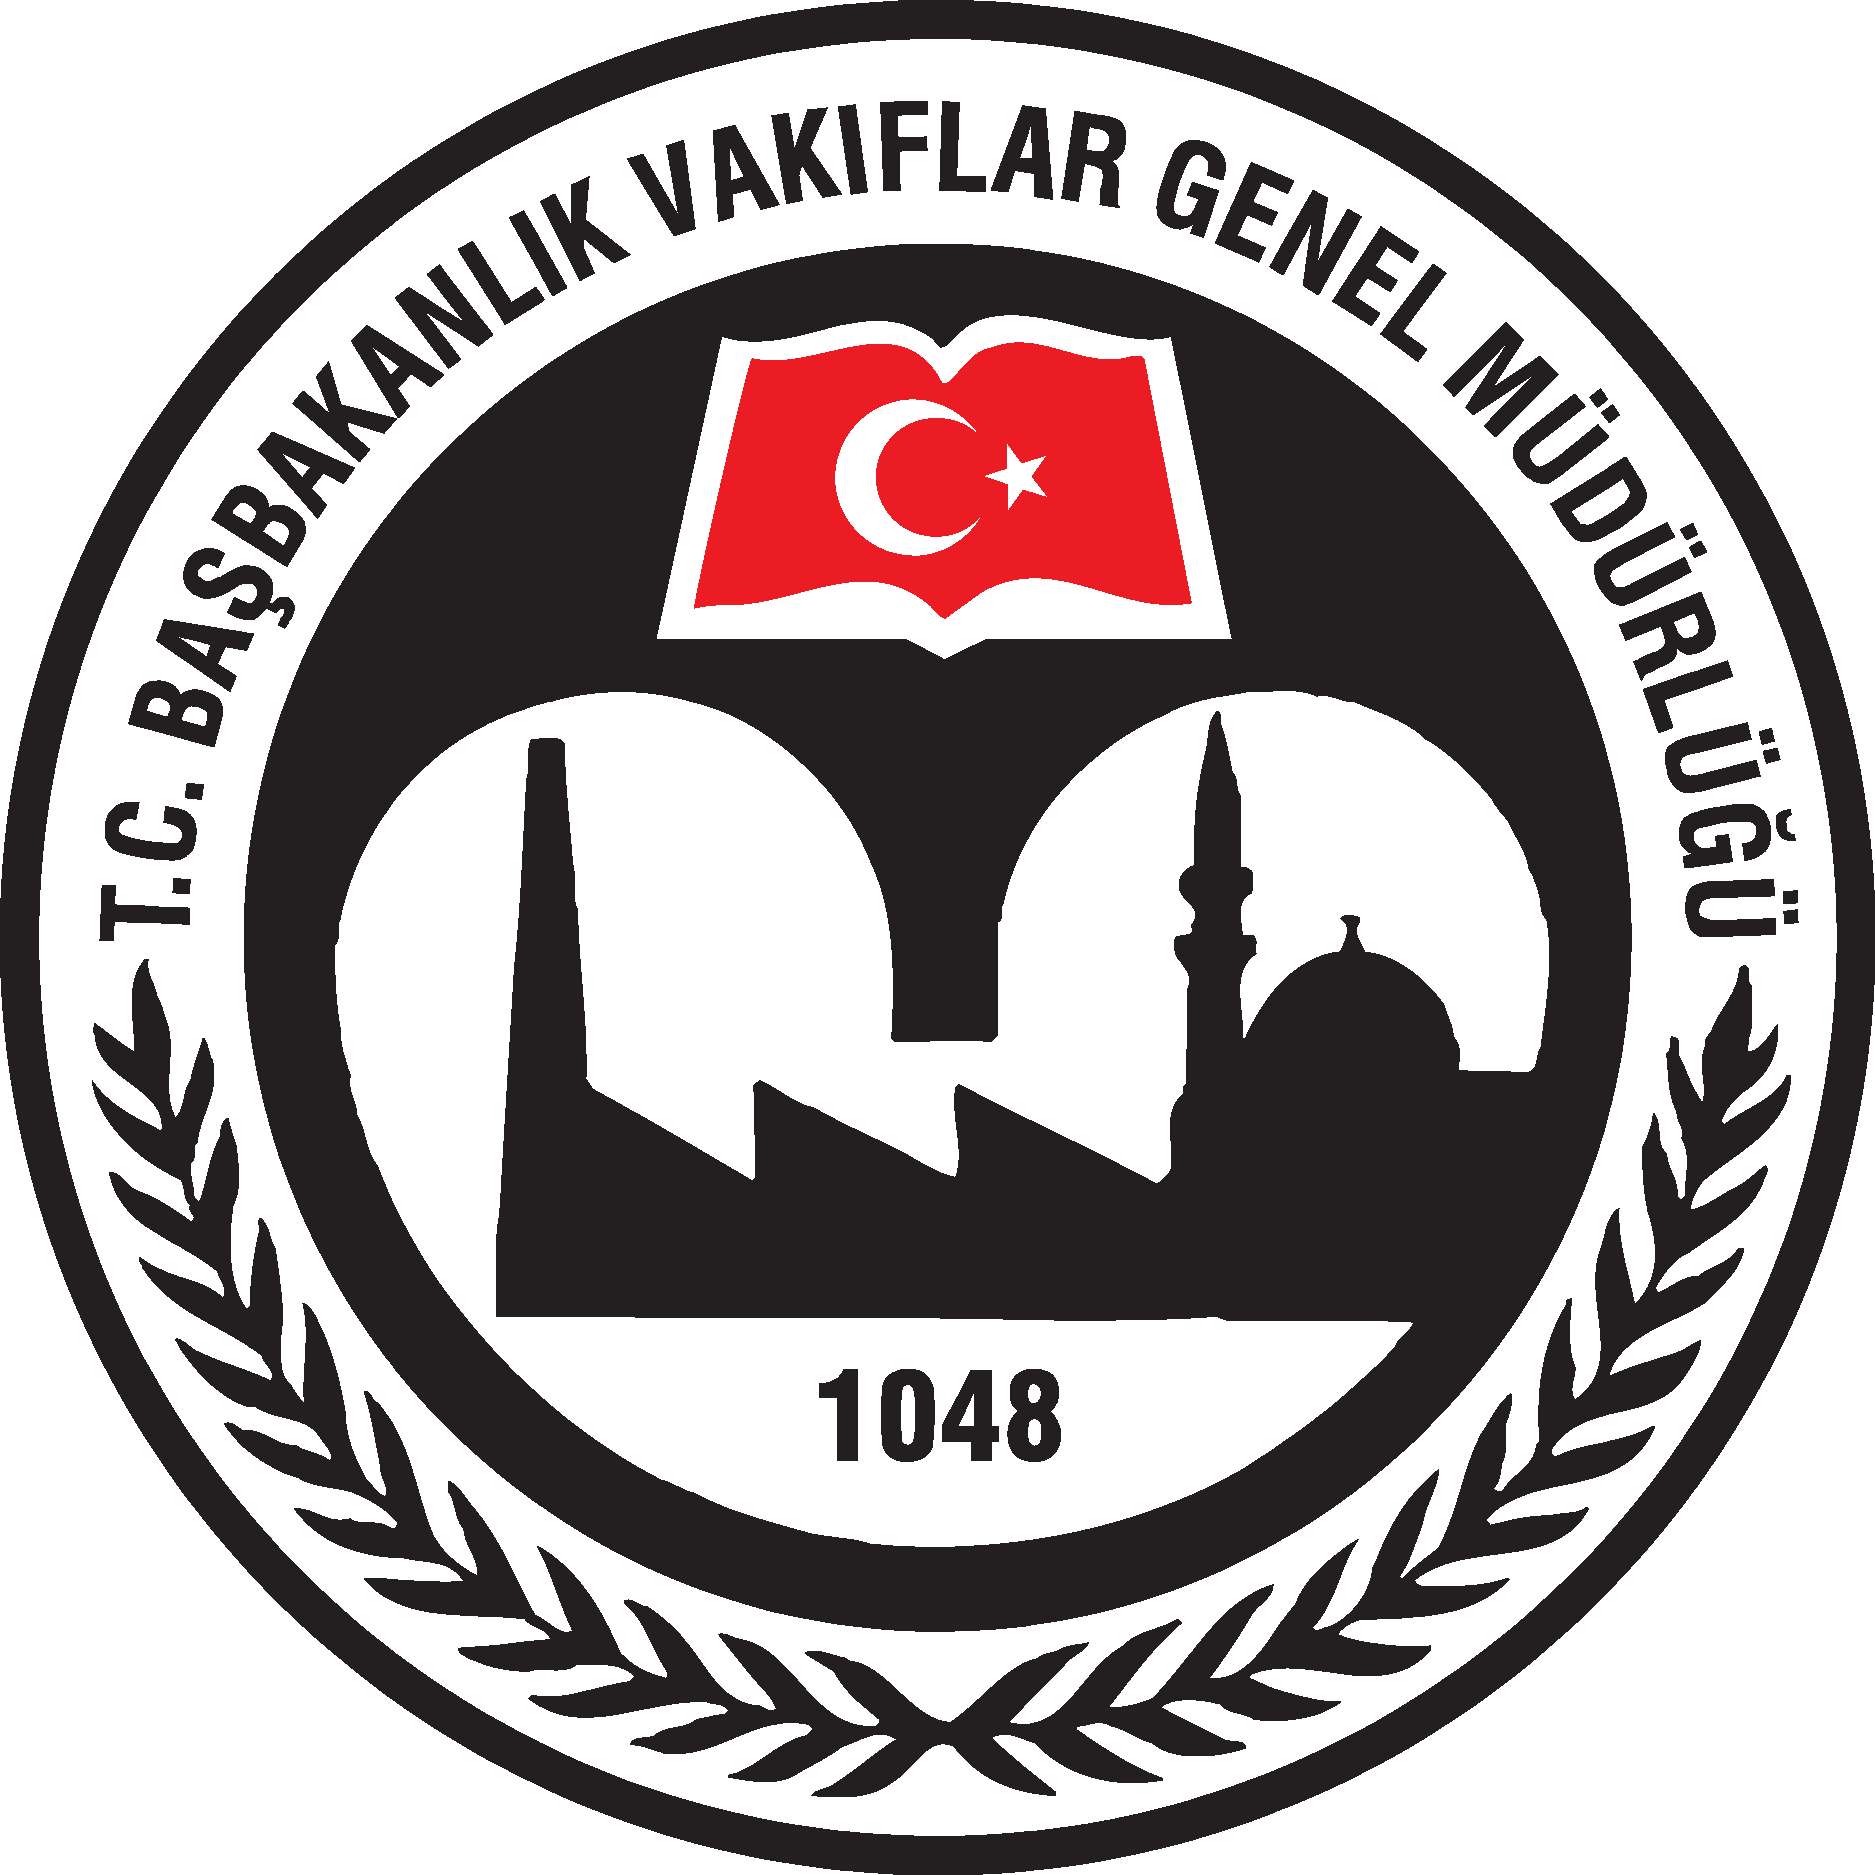 Tc Basbakanlik Vakiflar Genel Mudurlugu Logo Vector